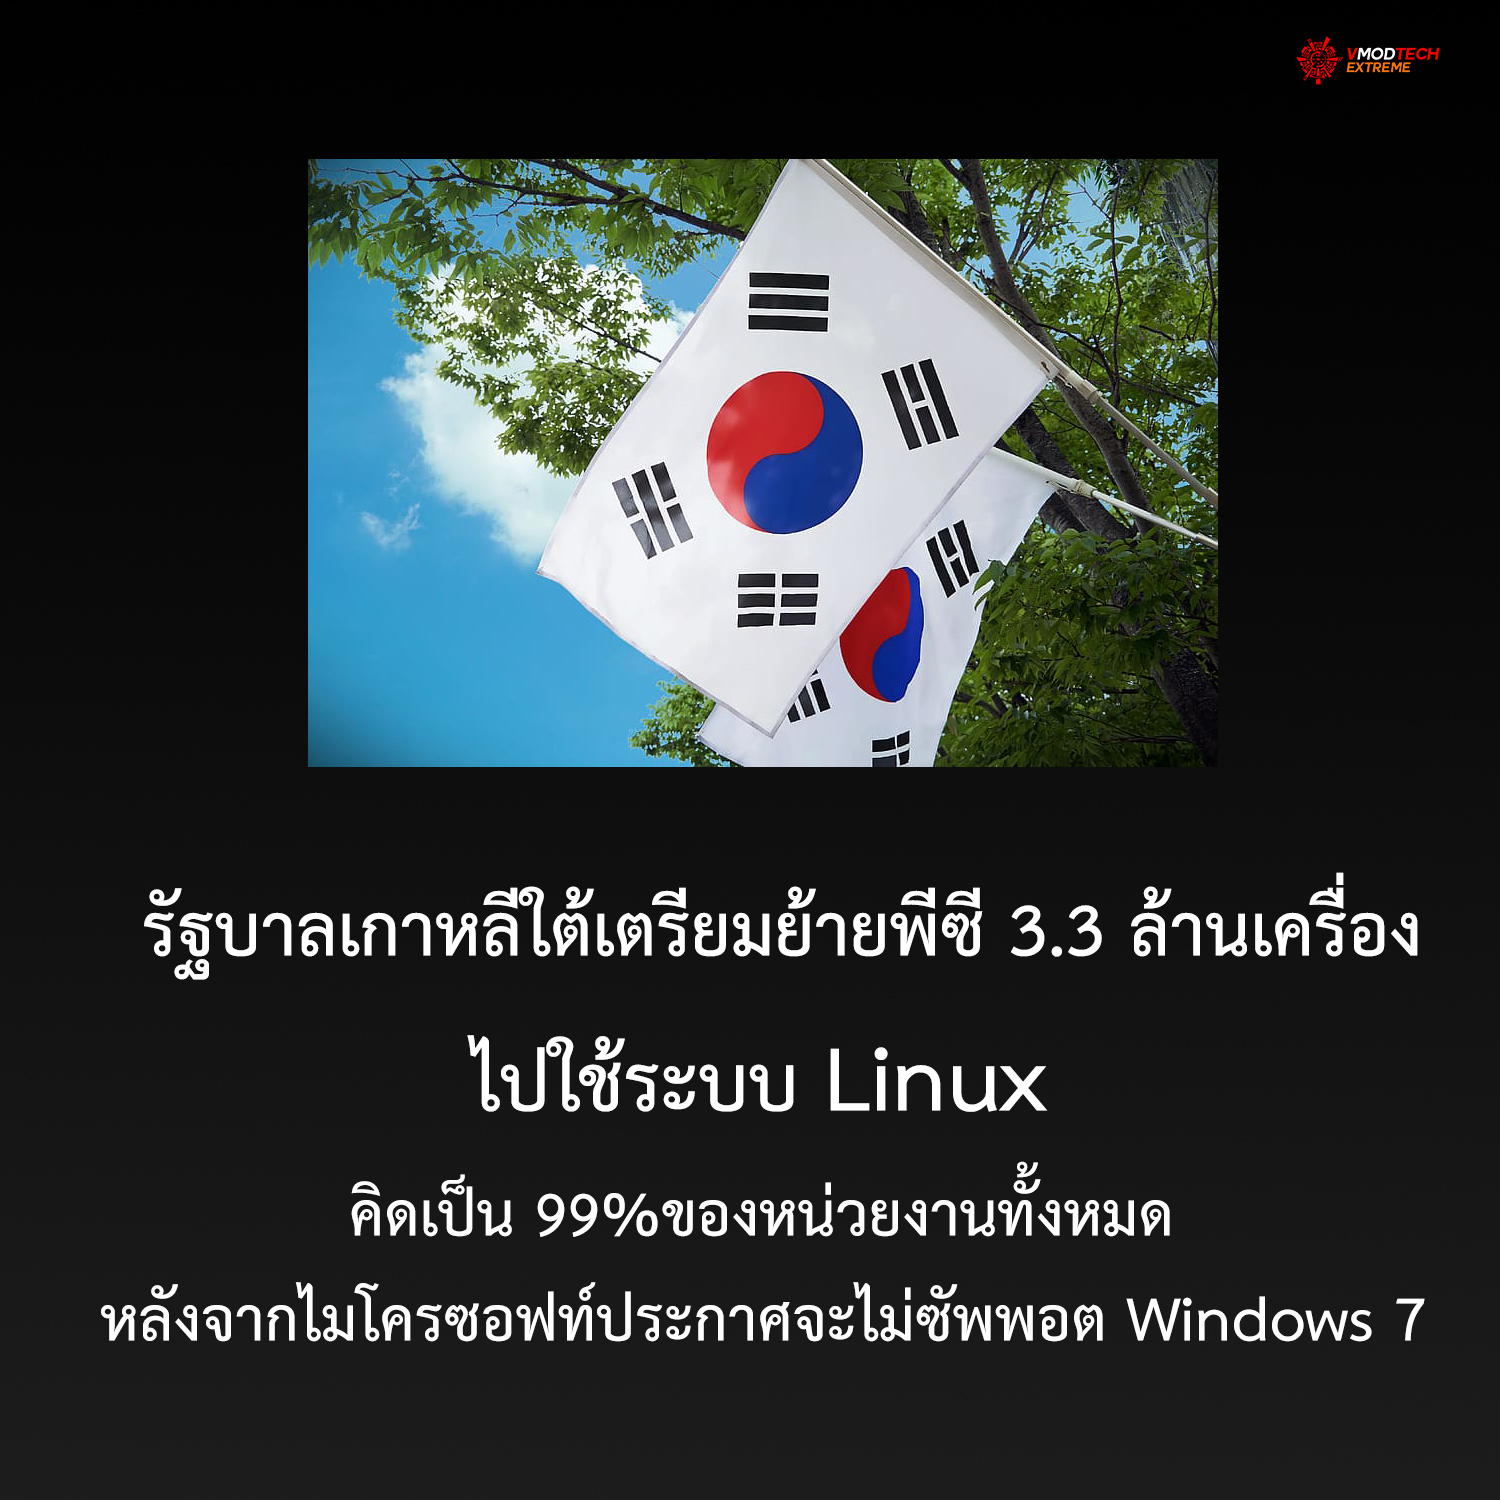 รัฐบาลเกาหลีใต้เตรียมย้ายพีซี 3.3 ล้านเครื่องไปใช้ระบบ Linux หลังจากไมโครซอฟท์ประกาศจะไม่ซัพพอร์ต Windows 7 